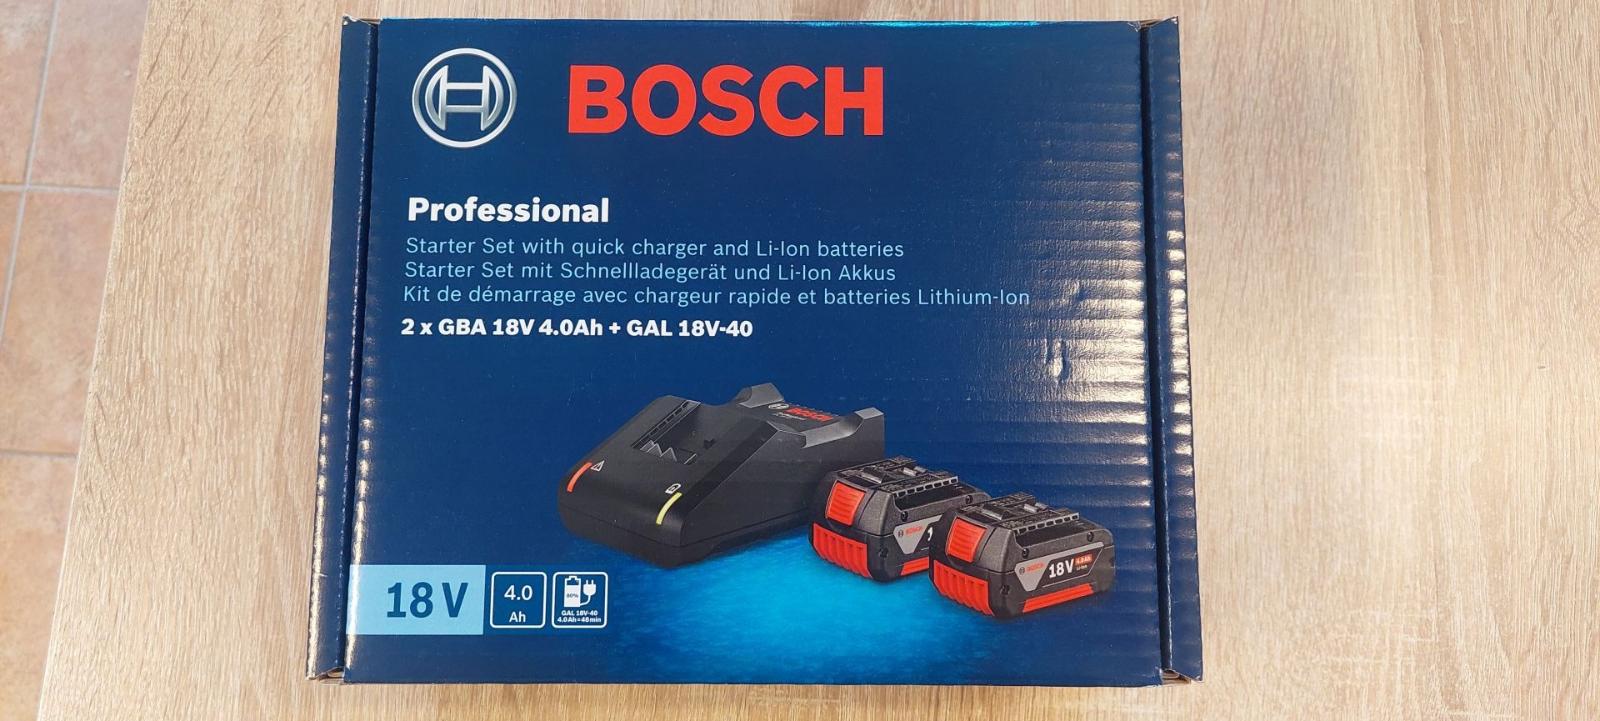 Bosch Starter set 2x GBA 18V 4,0 Ah + GAL 18V-40 Professional - Elektrické náradie